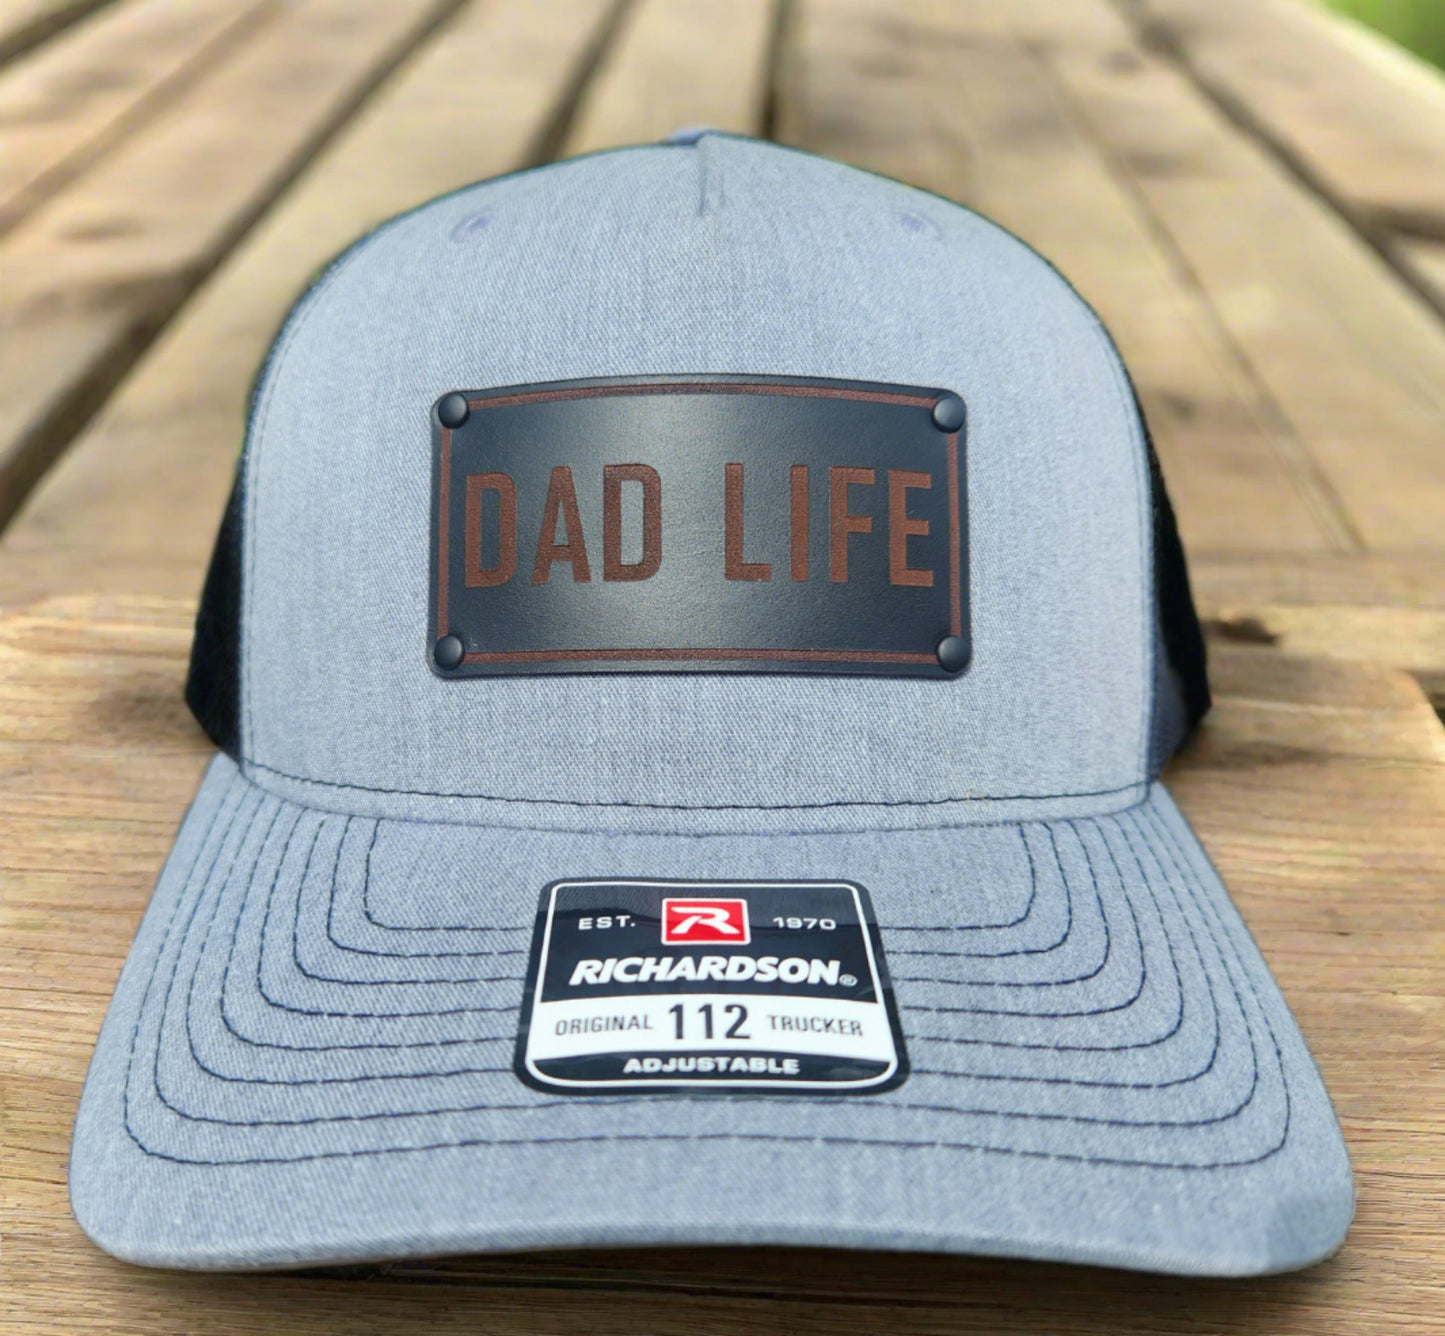 DAD LIFE Hat - New Dad hat